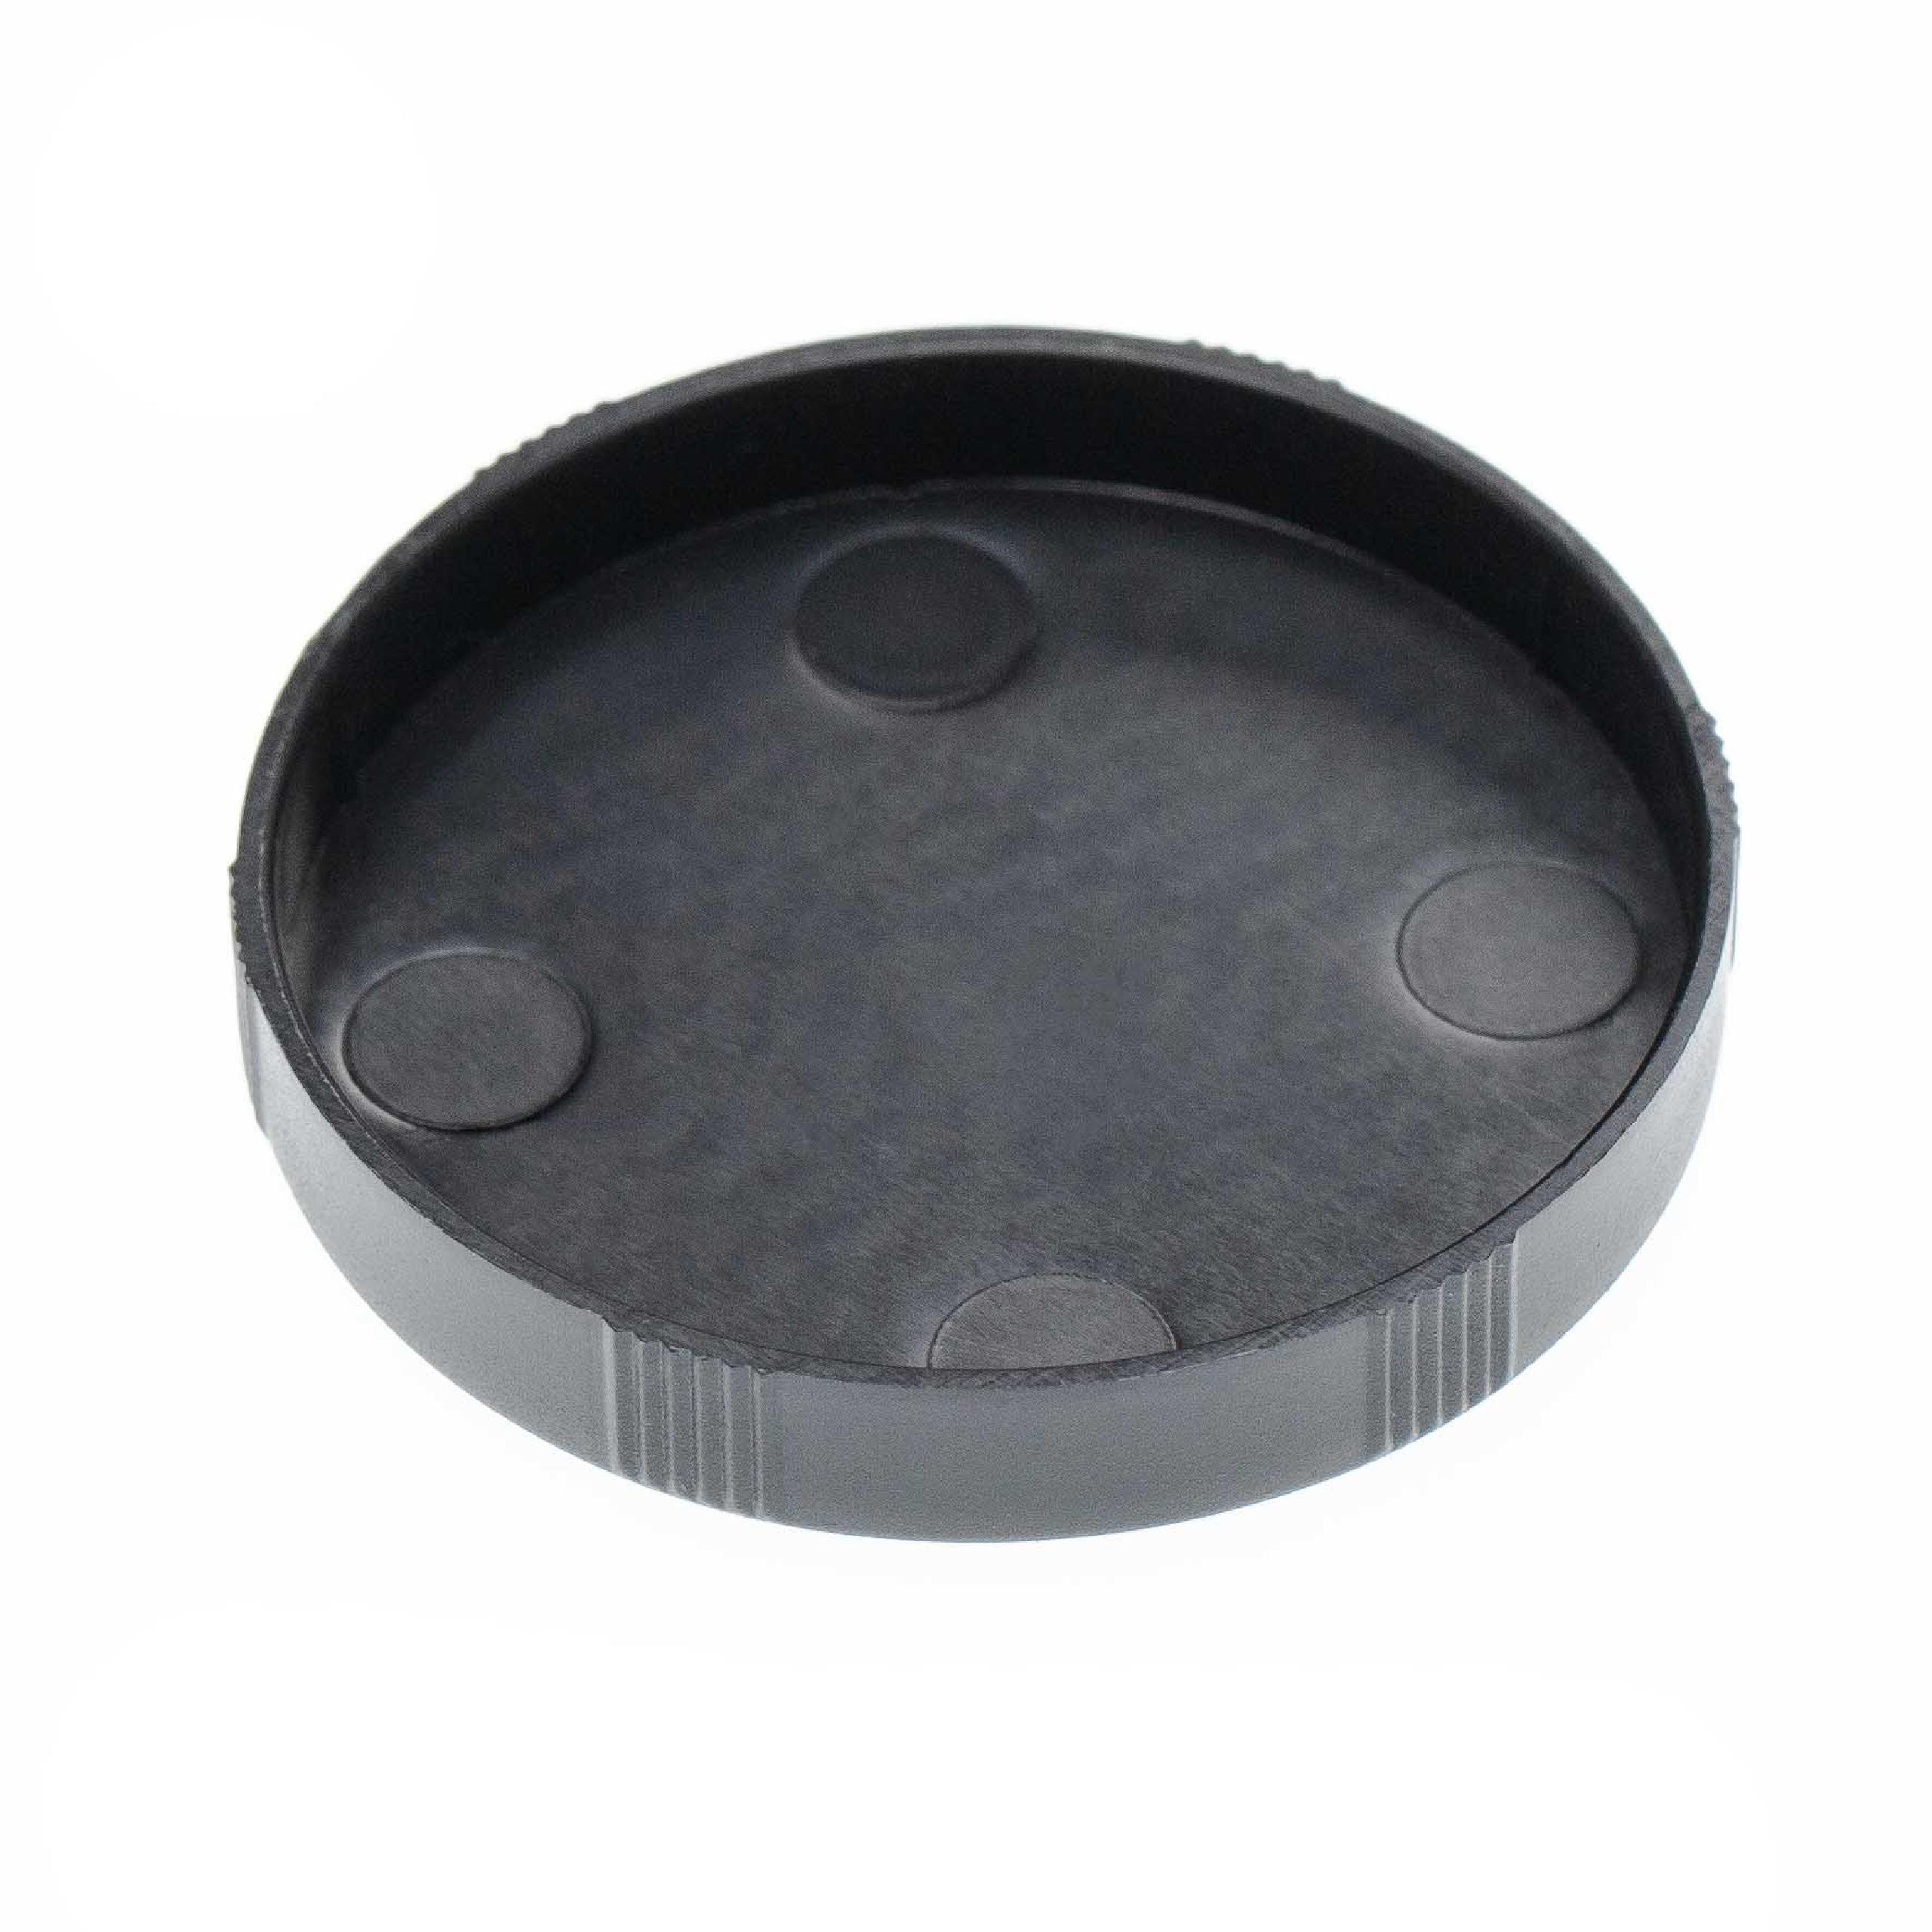 2x Tappo coprilenti per obiettivi binocolo con diametro 45 mm - nero, a incastro